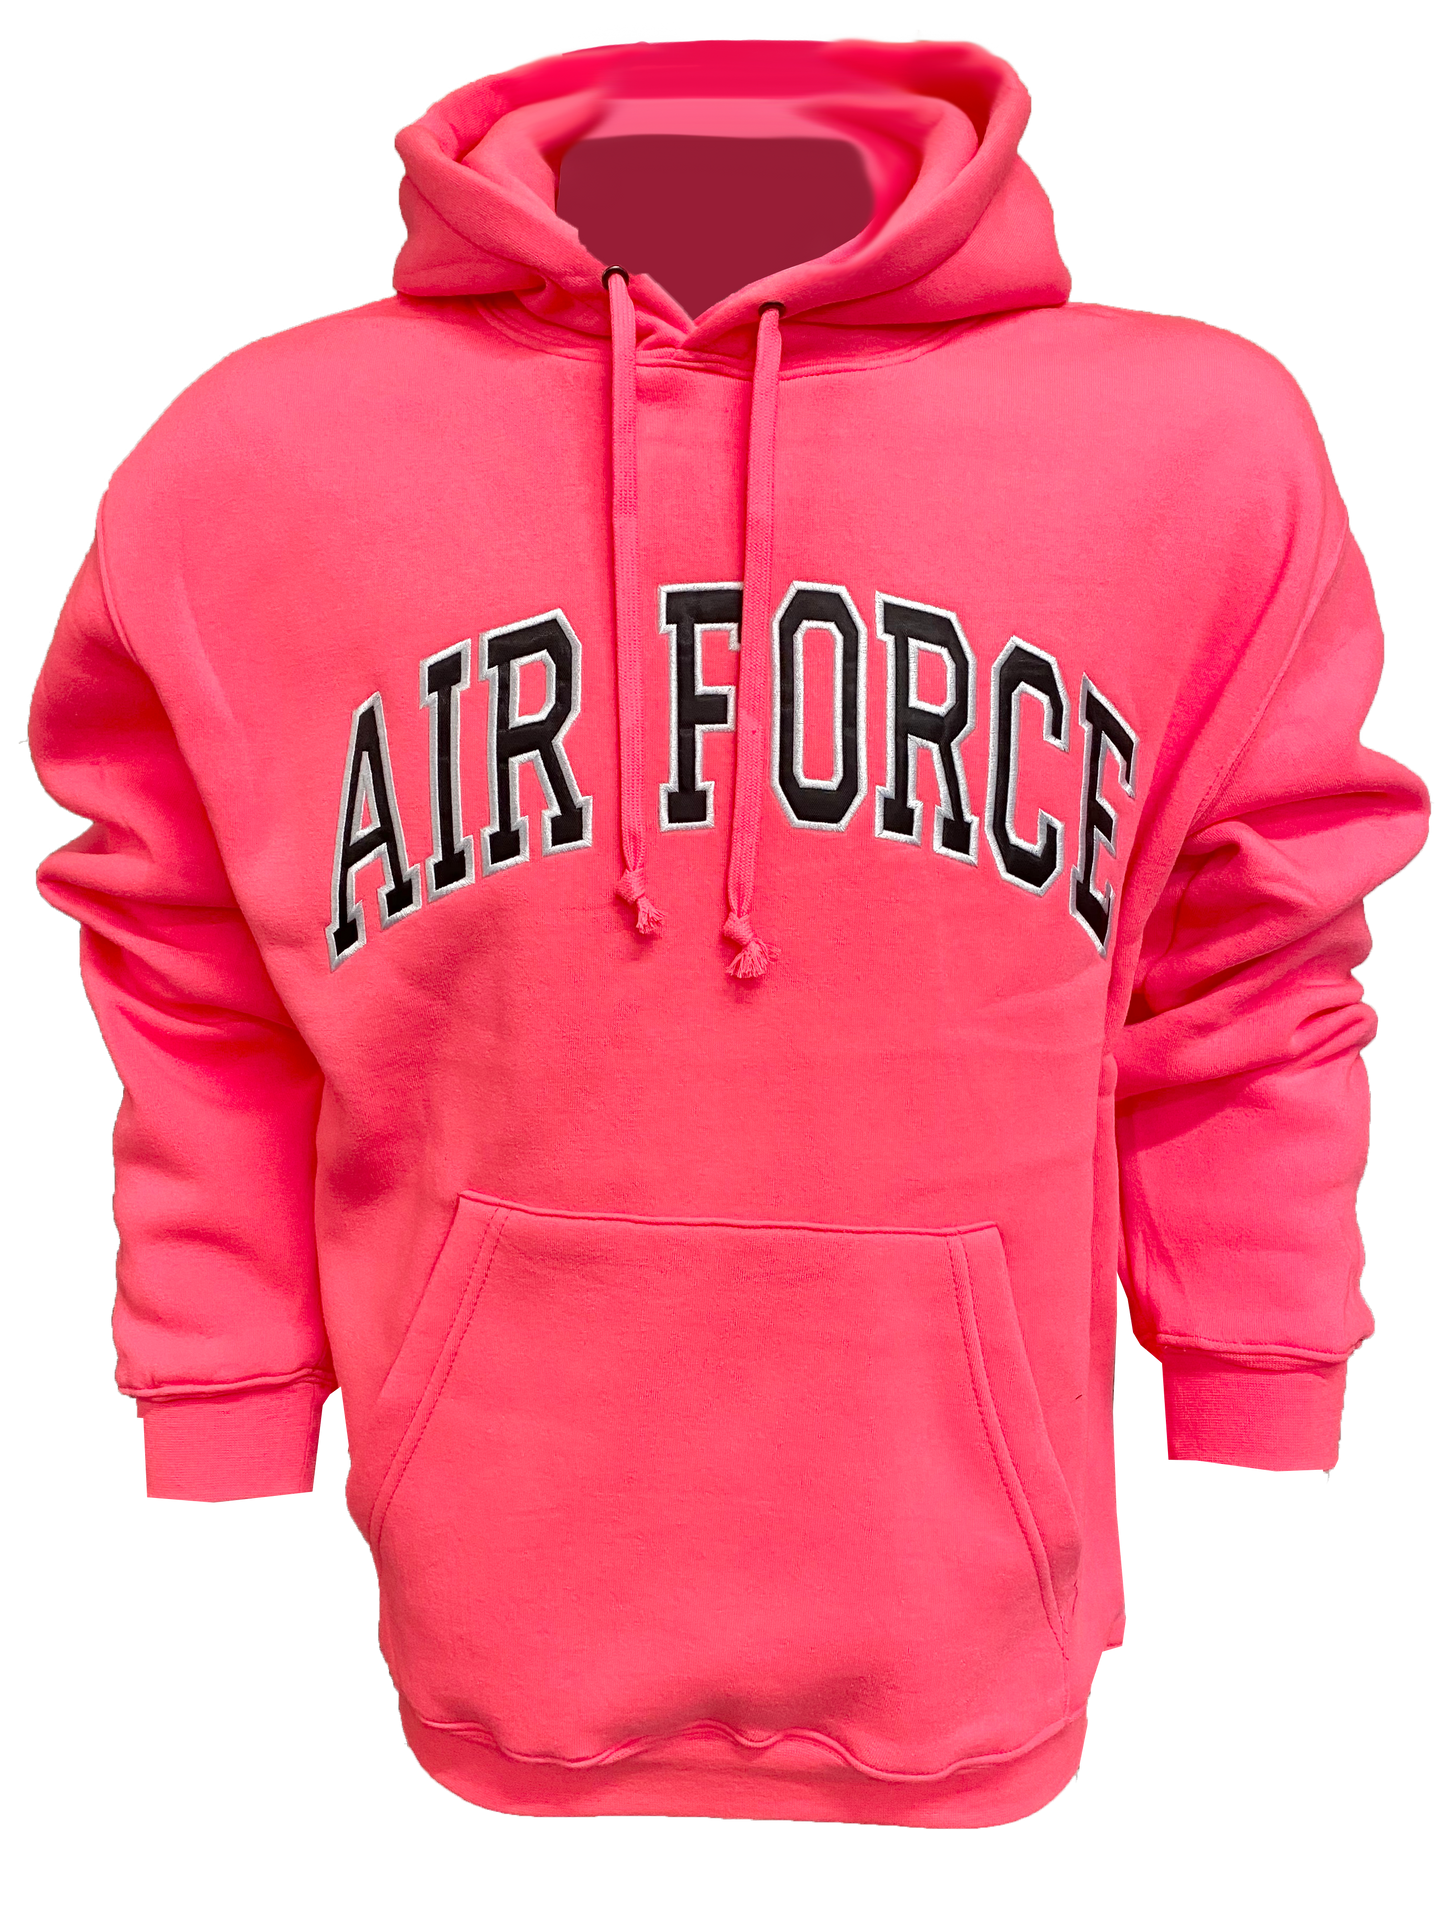 US Air Force on Fleece Pullover Hoodie